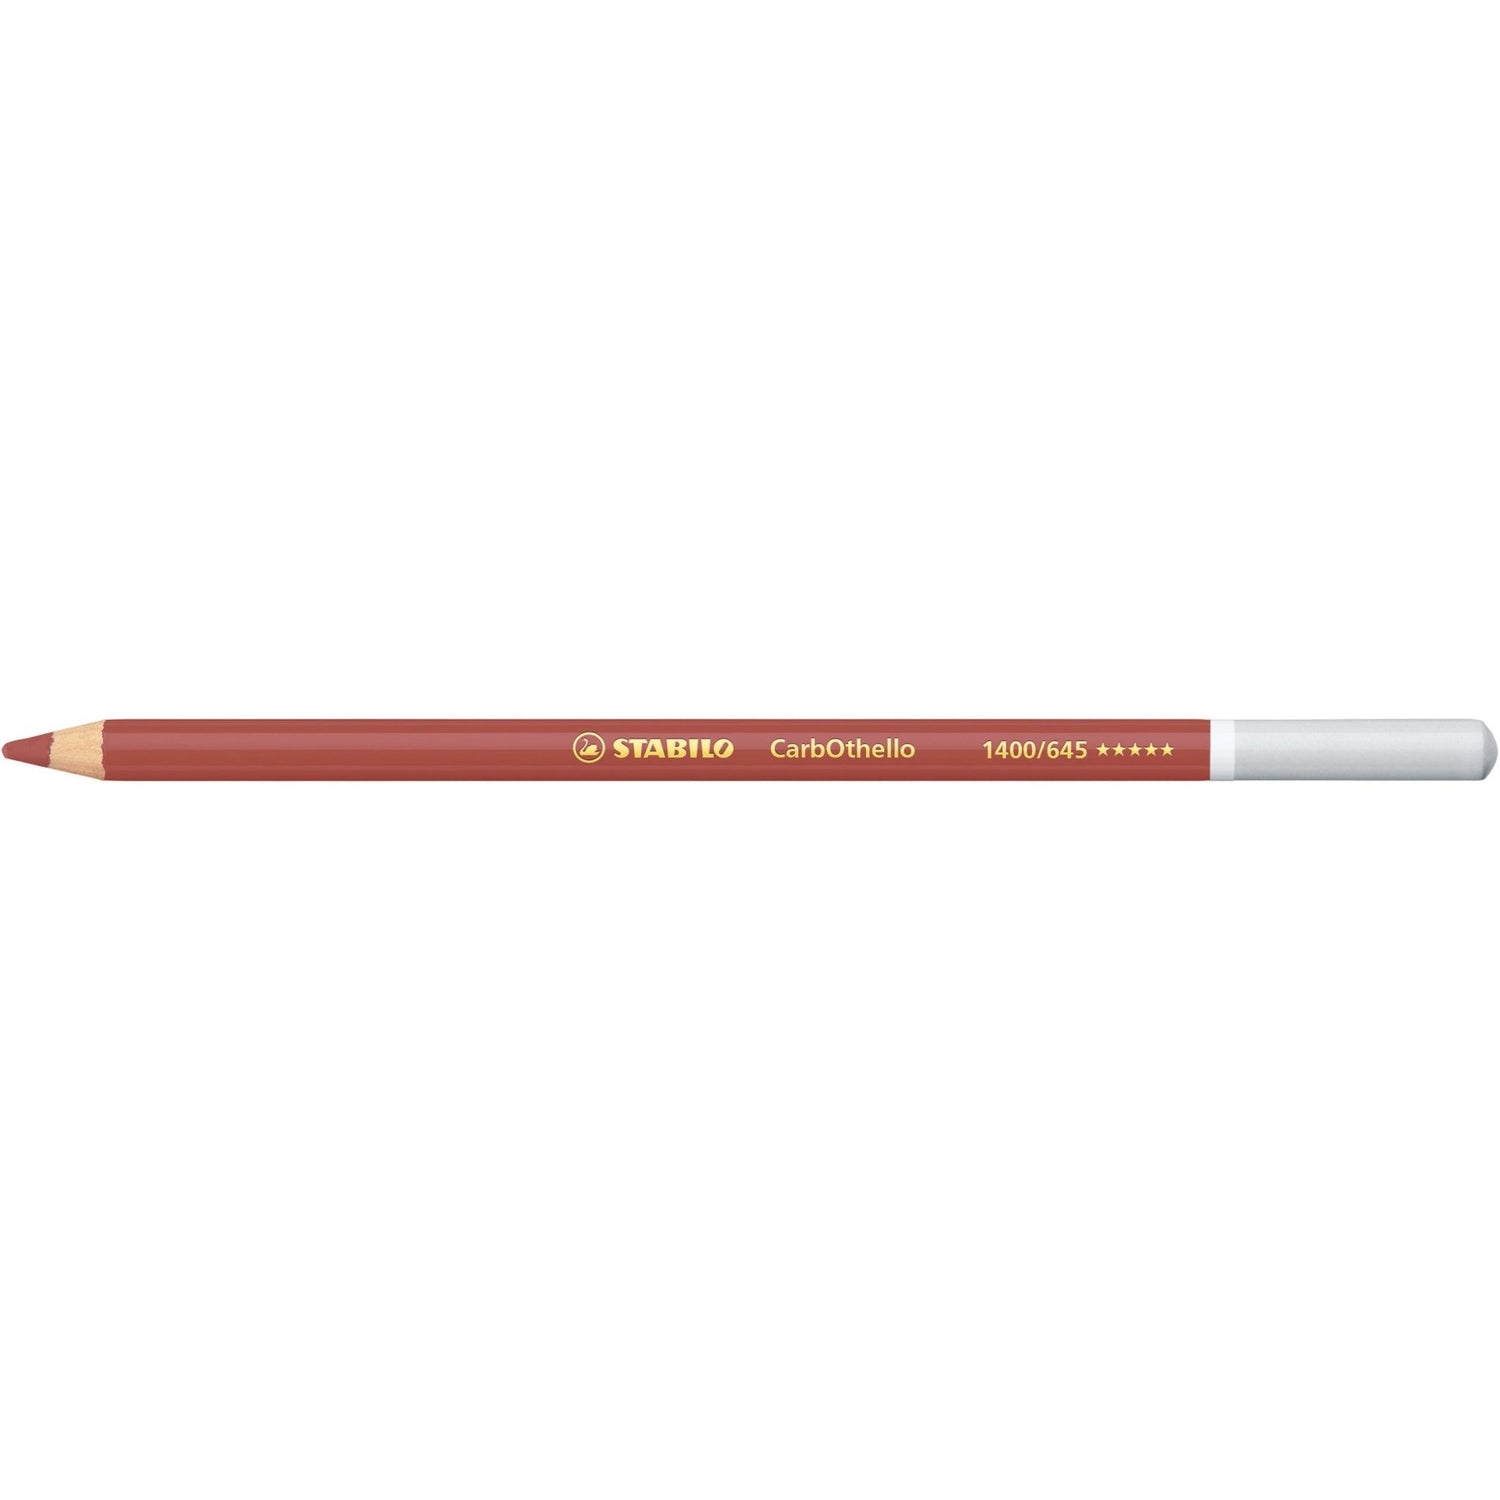 Stabilo CarbOthello Coloured Pastel Pencil 645 Caput Mortuum Red - theartshop.com.au